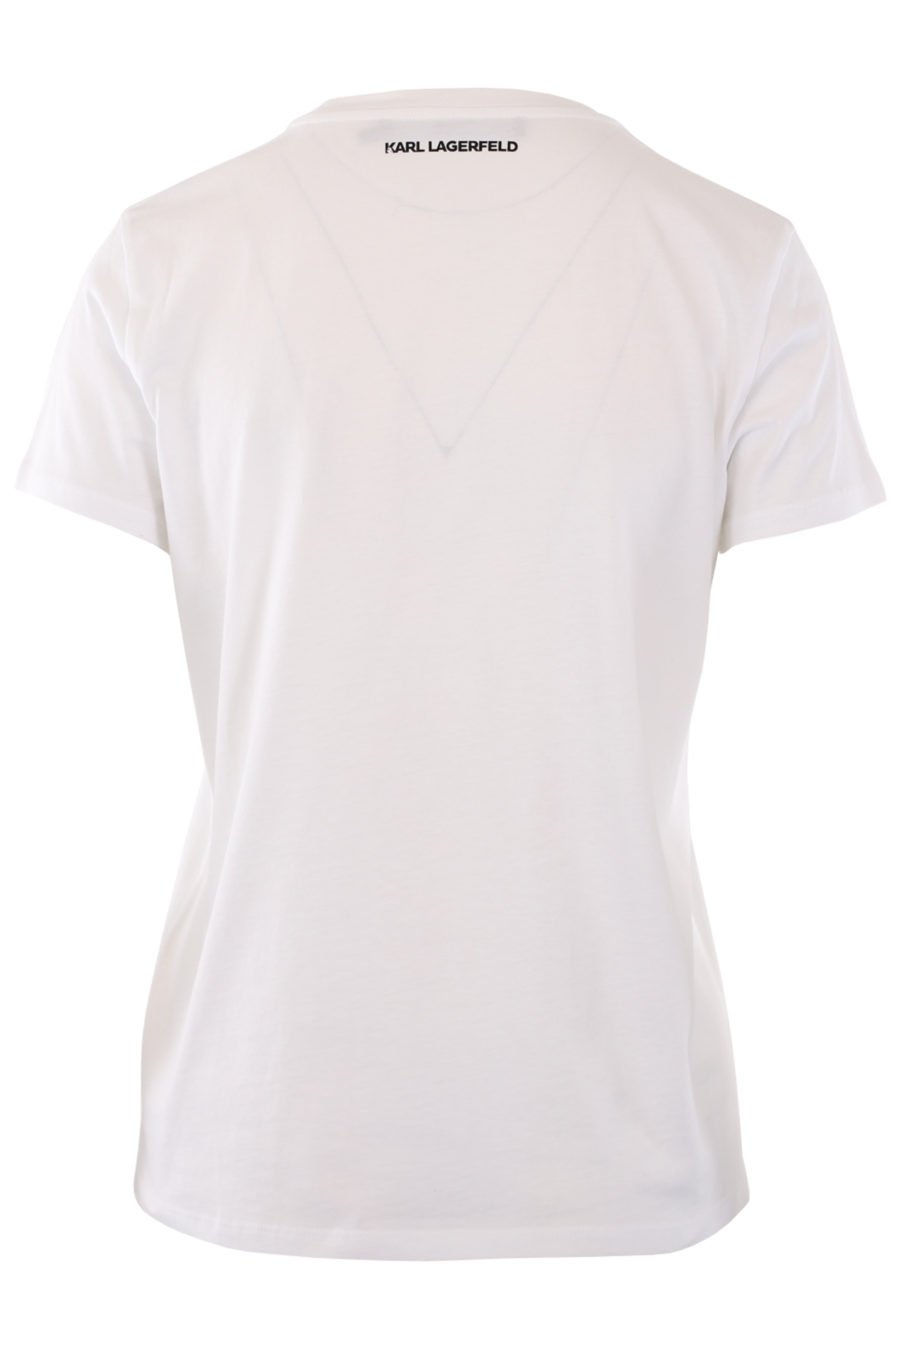 Camiseta blanca con logo "karl" multicolor de goma - IMG 0797